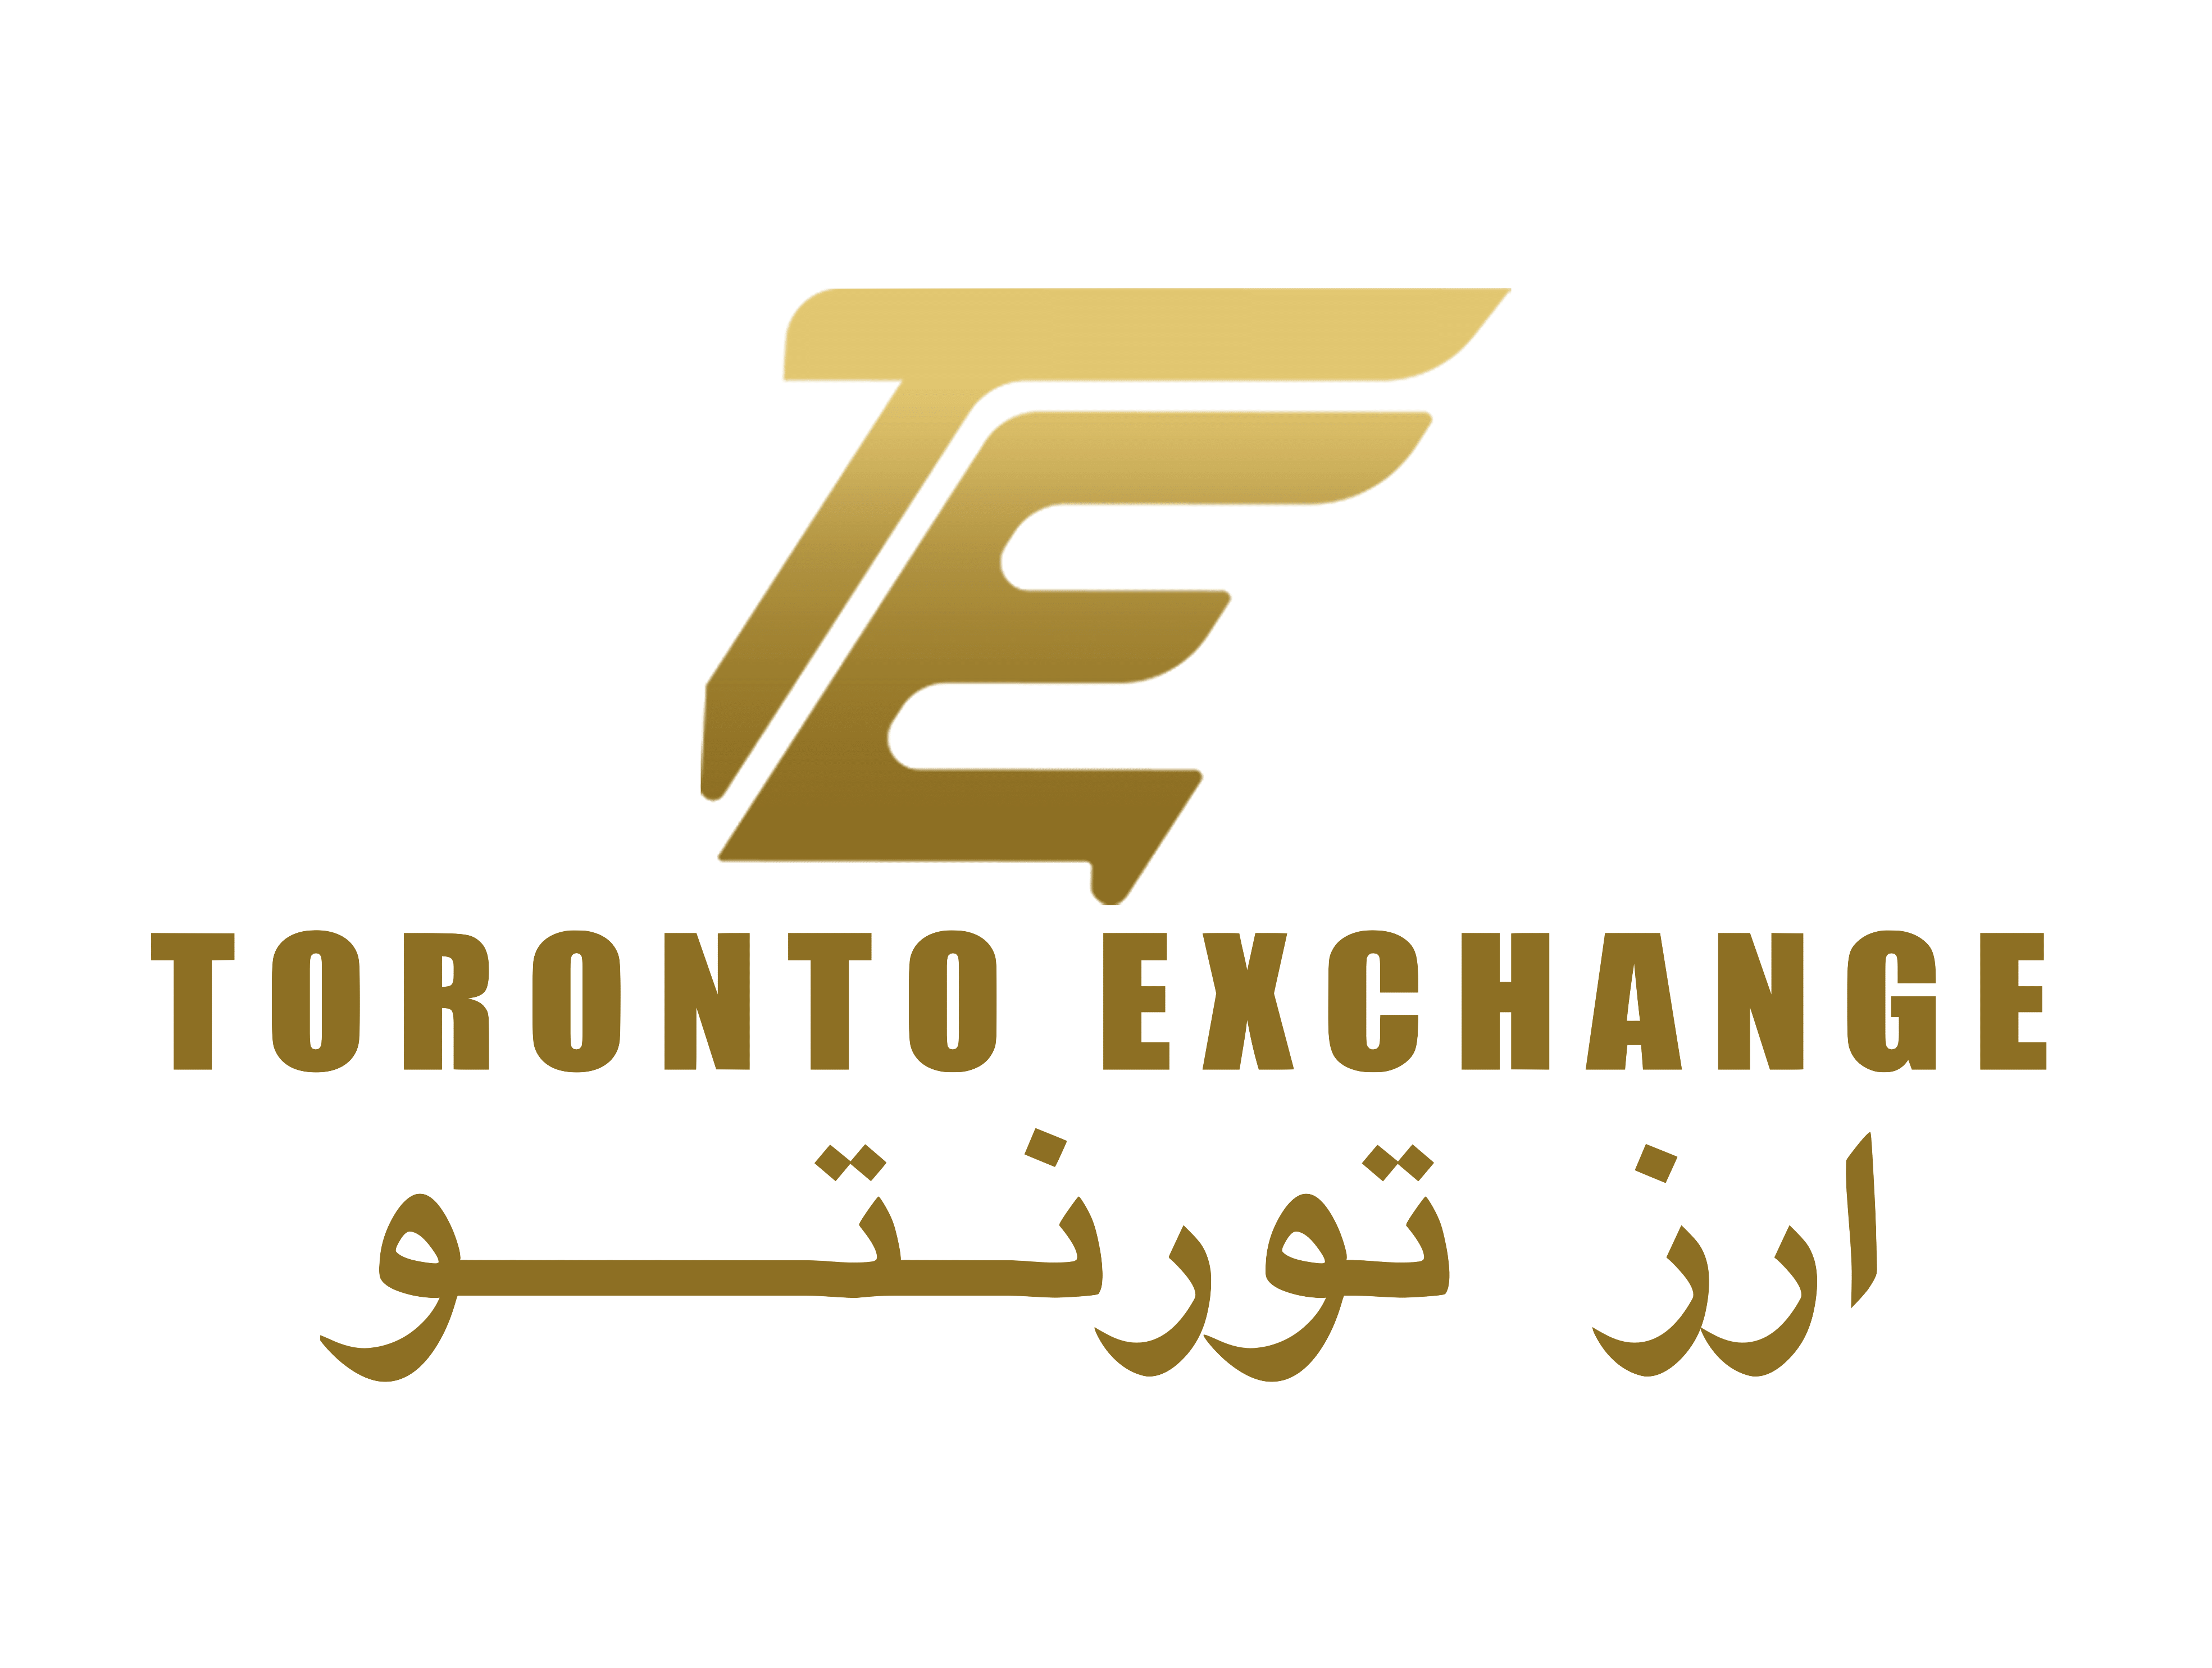 Toronto Exchange